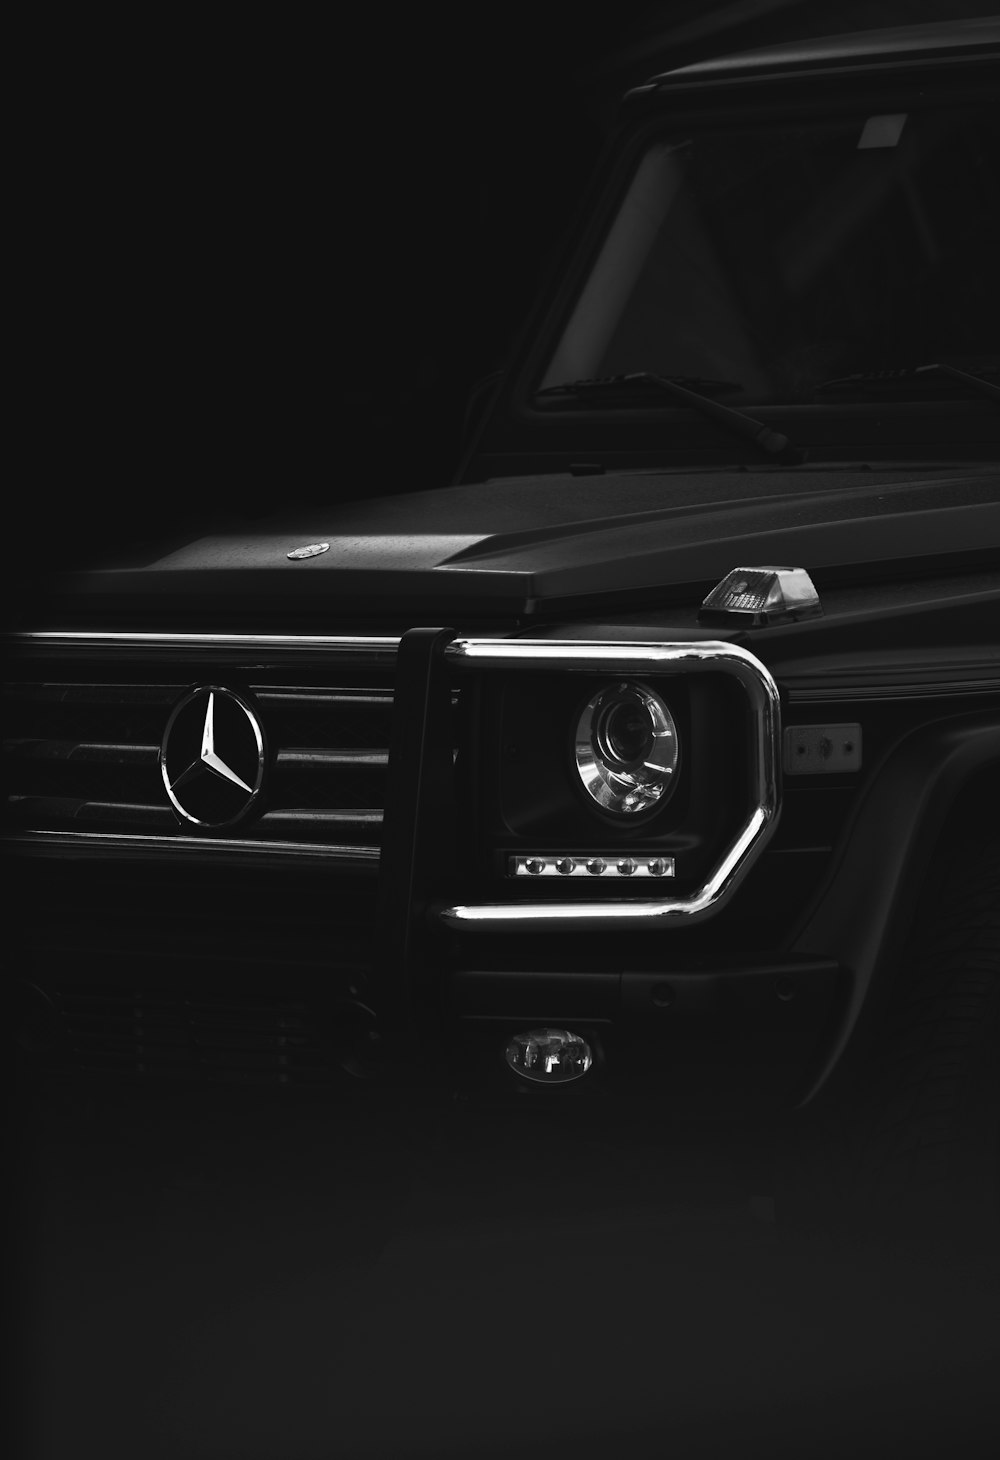 schwarzer Mercedes-Benz Pkw